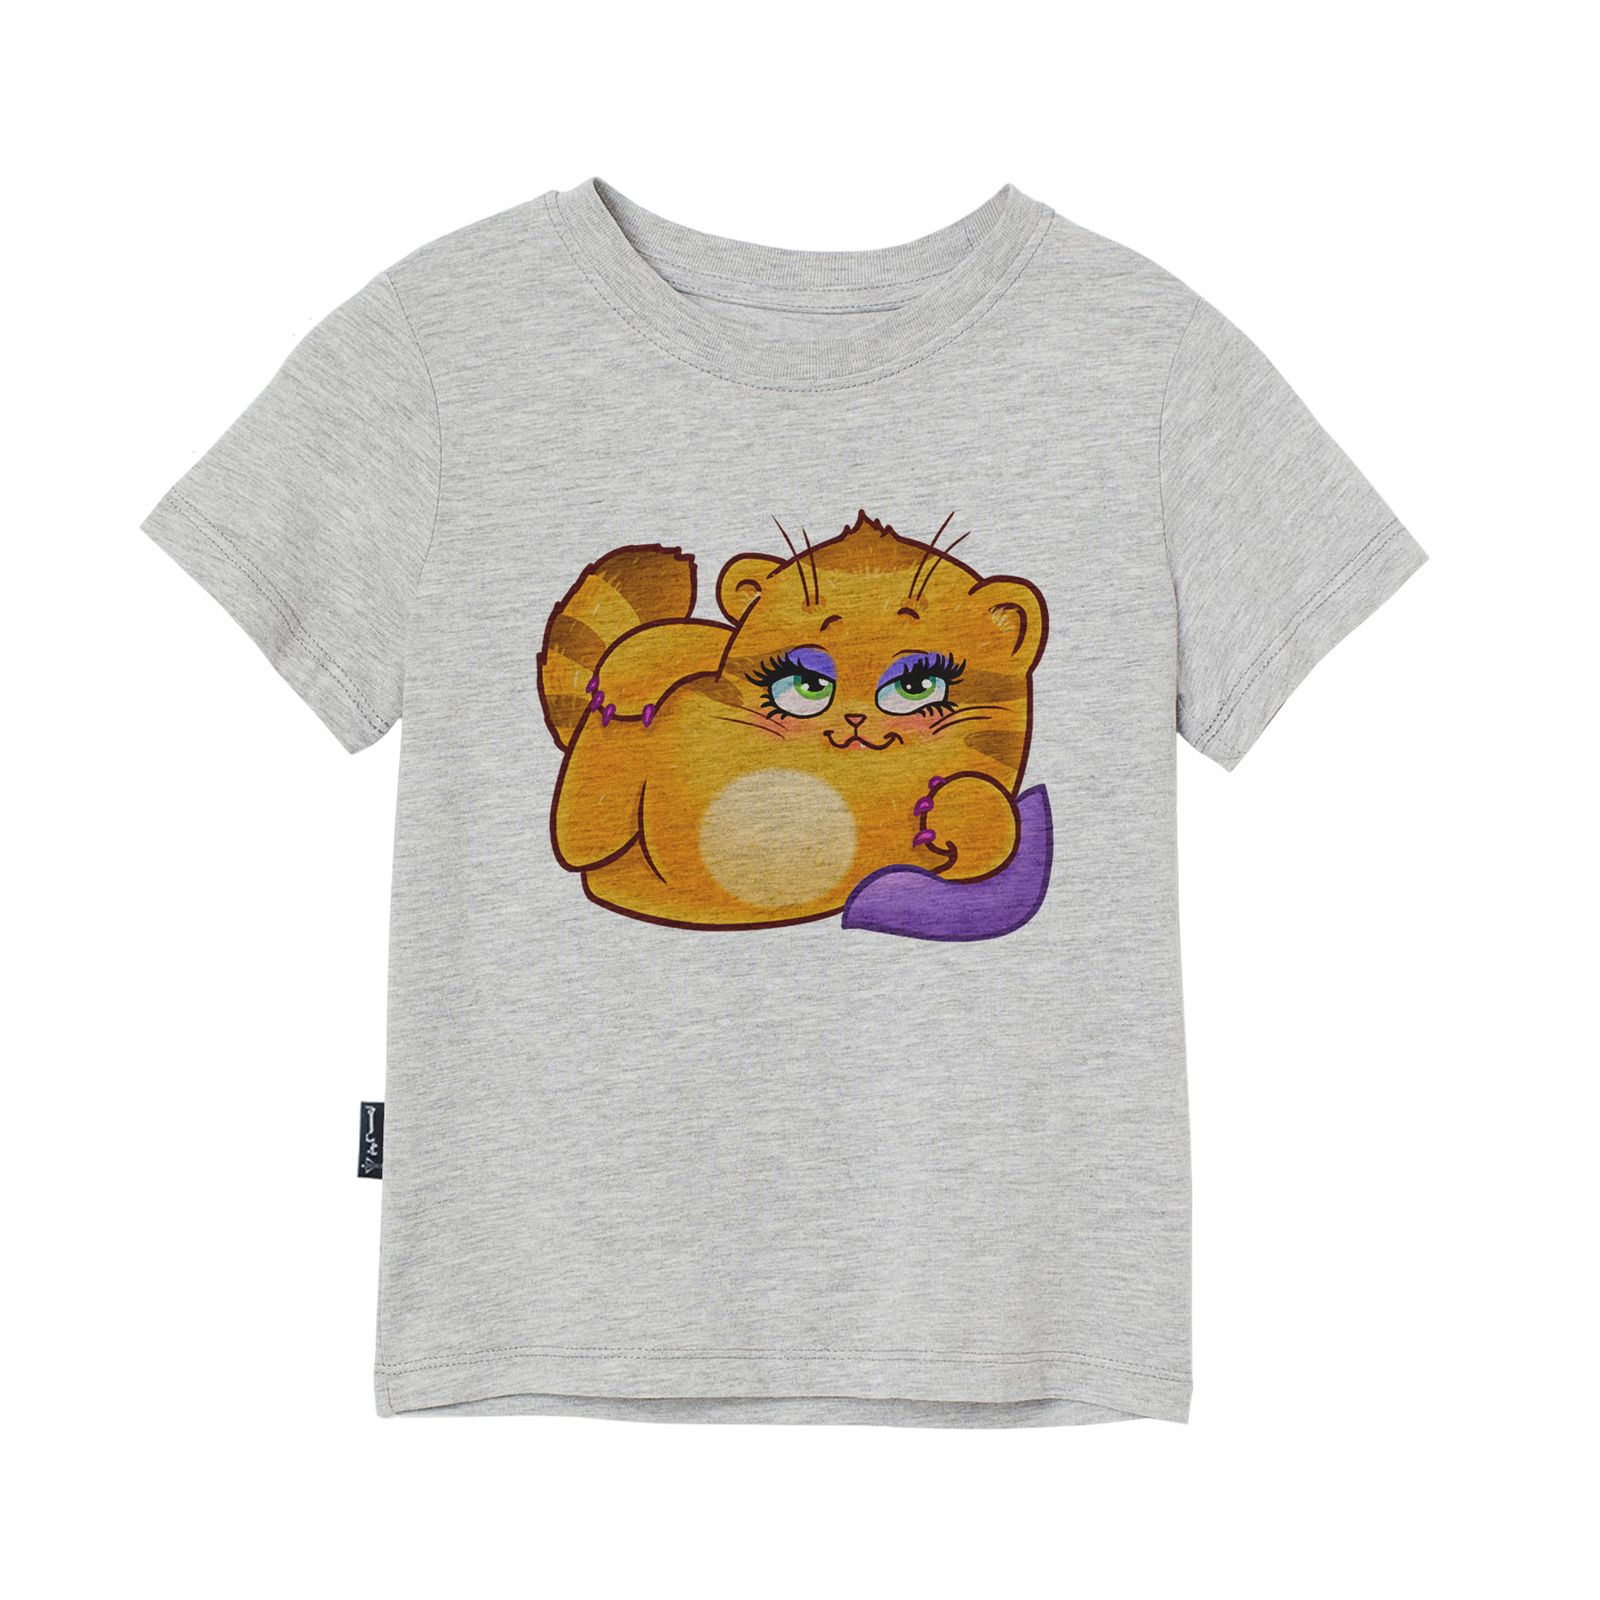 تی شرت آستین کوتاه پسرانه به رسم مدل استیکر گربه کد 1112 -  - 1